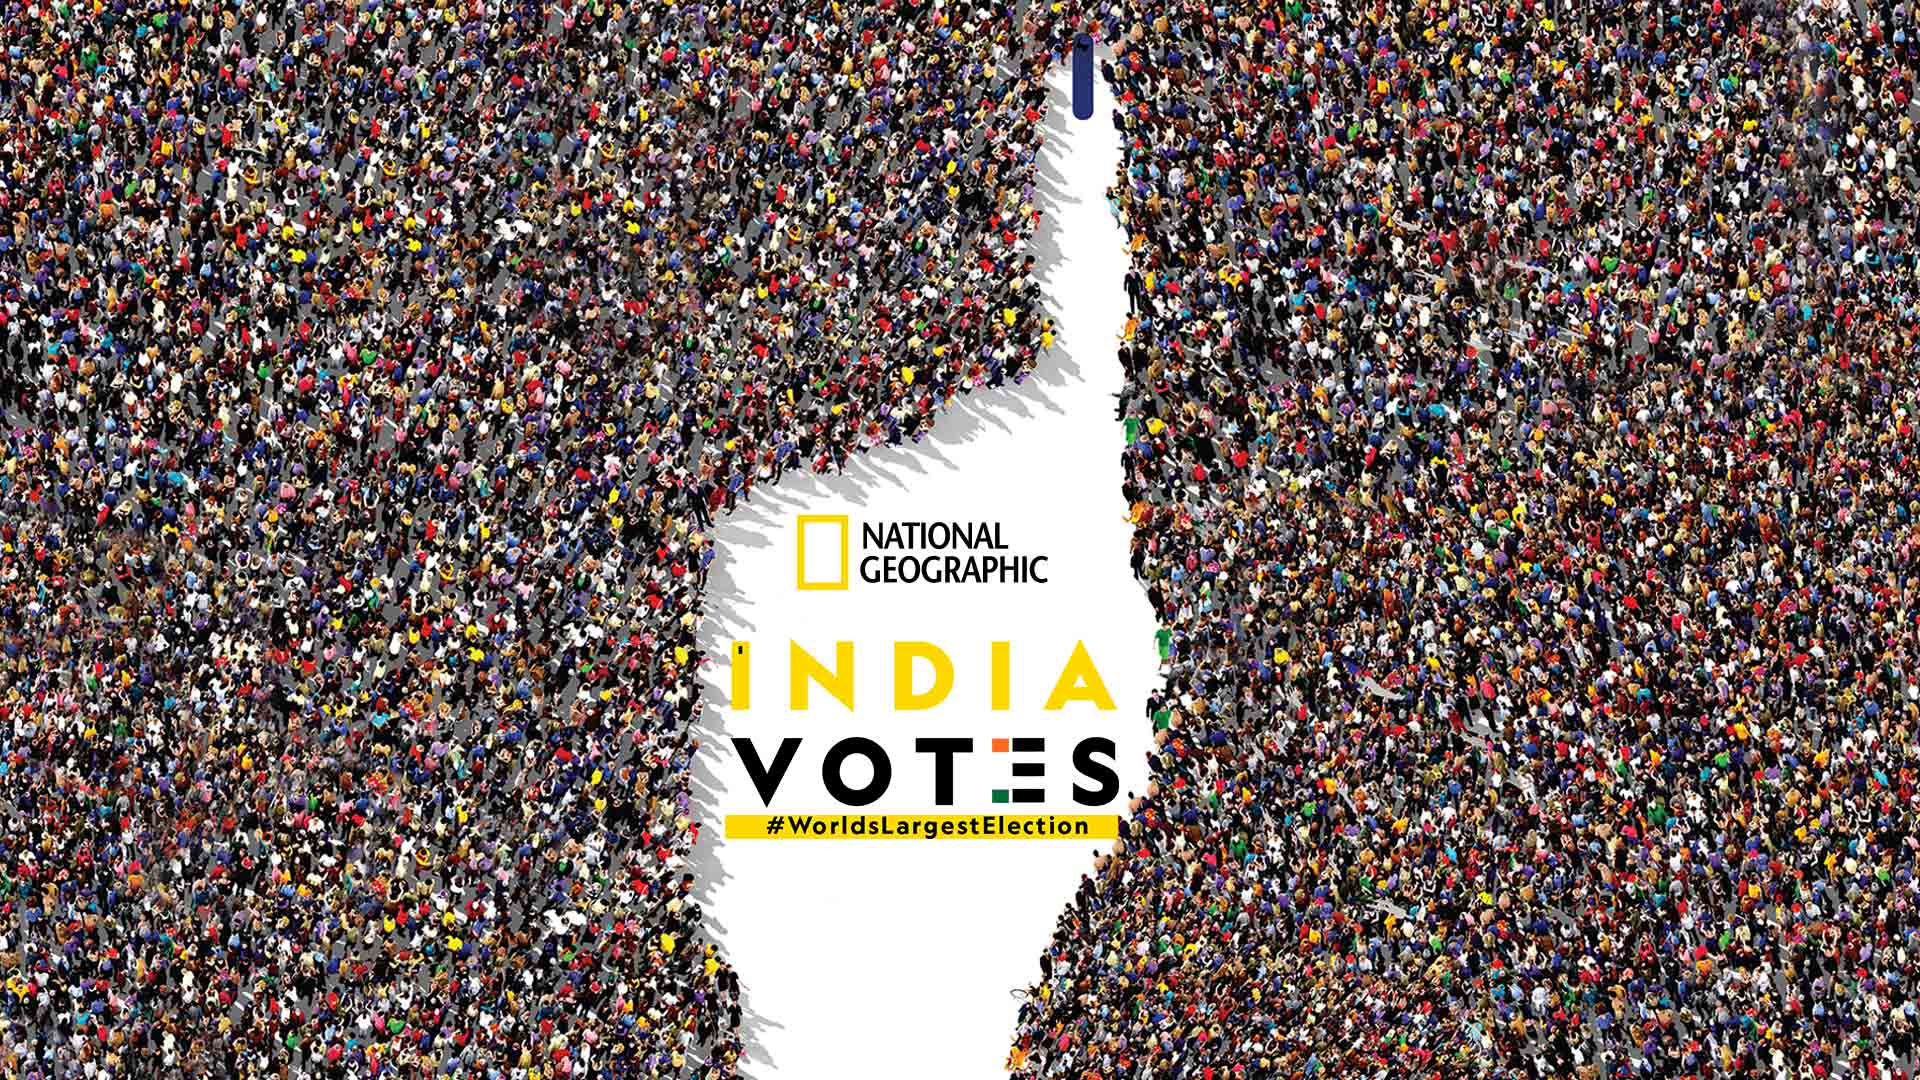 India Votes #WorldsLargestElection